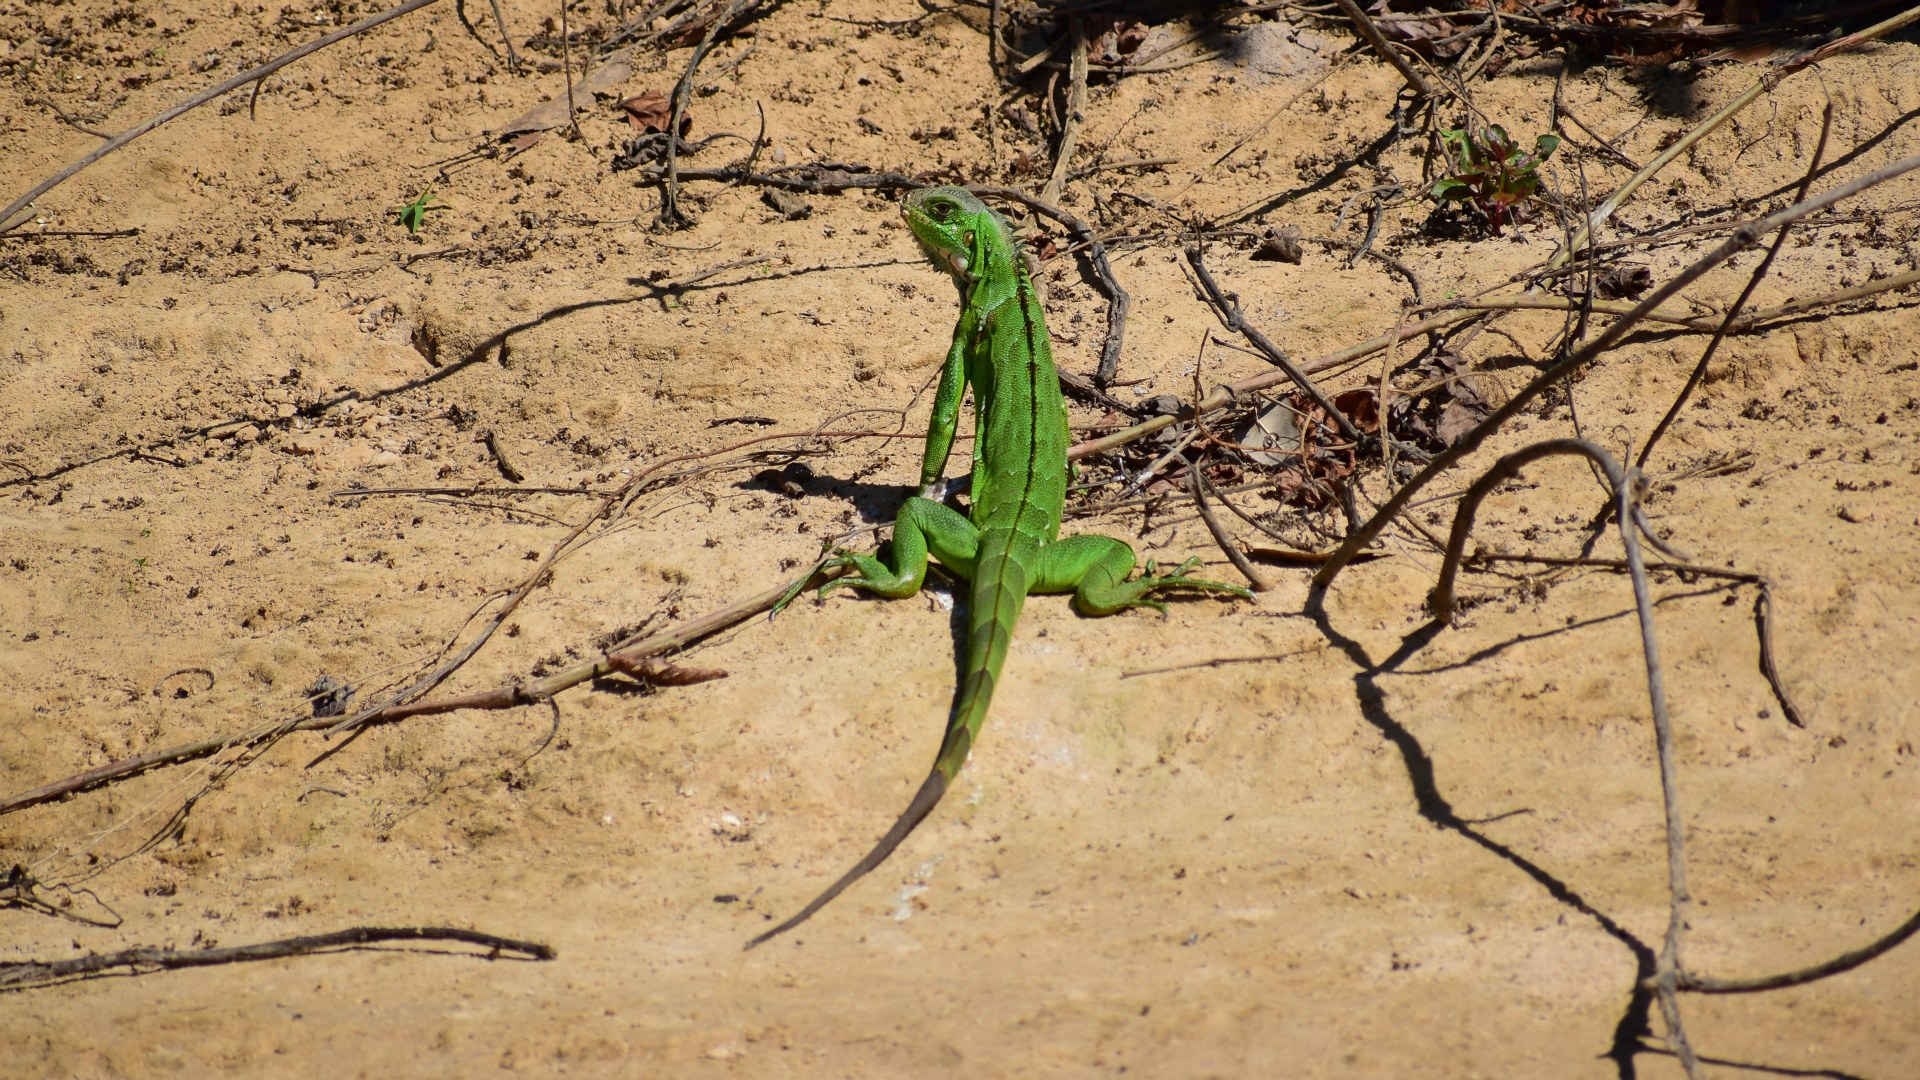 Green Iguana (juvenile), Central Pantanal